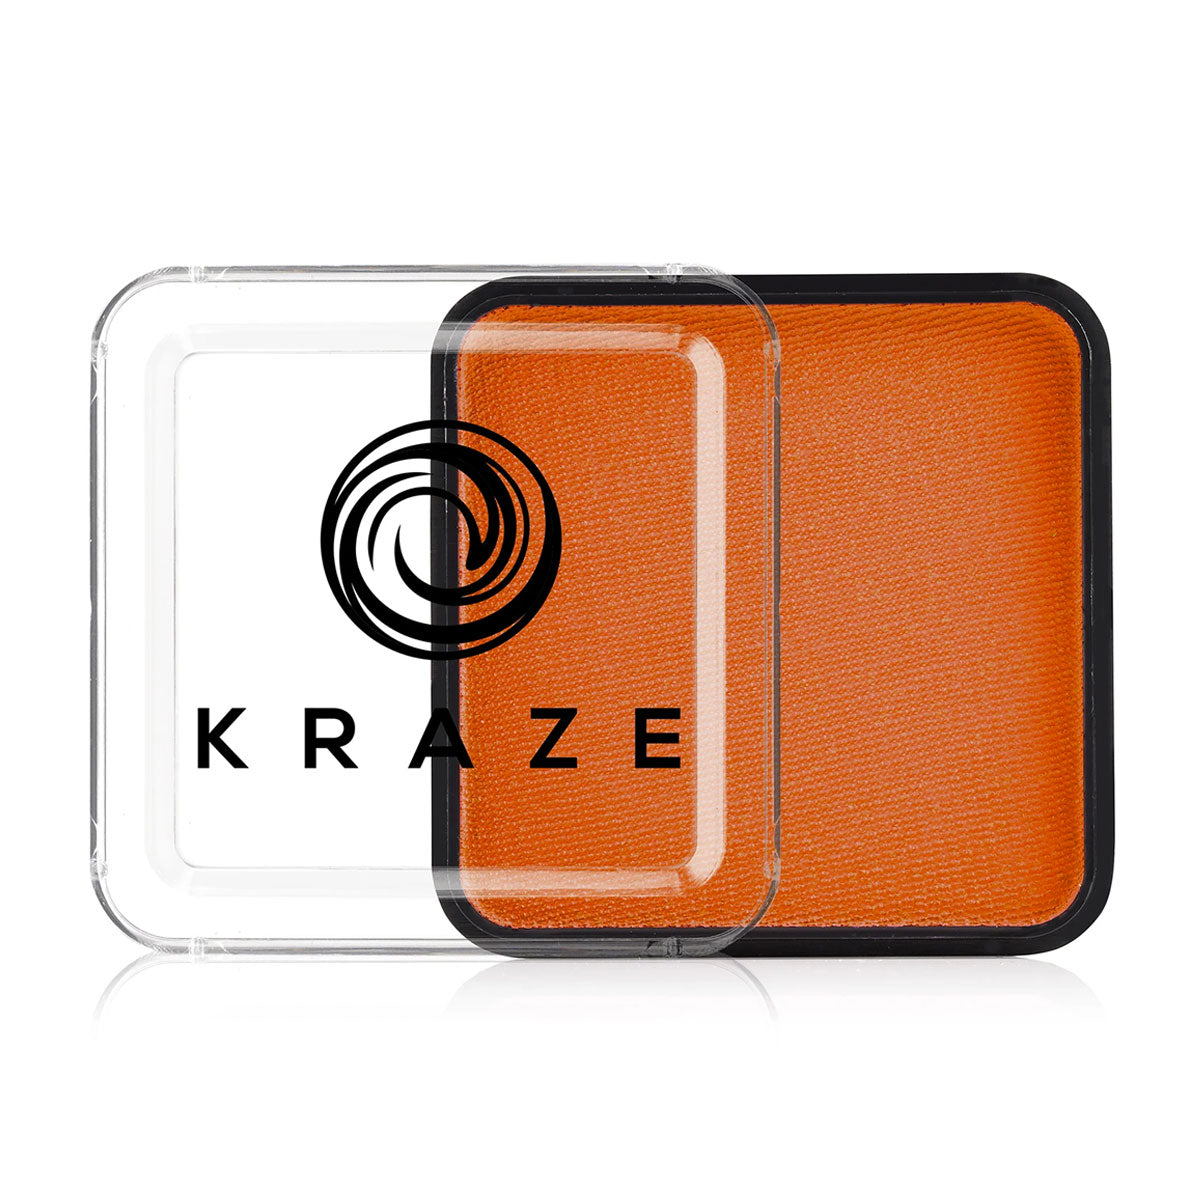 Orange Square 25g - Kraze